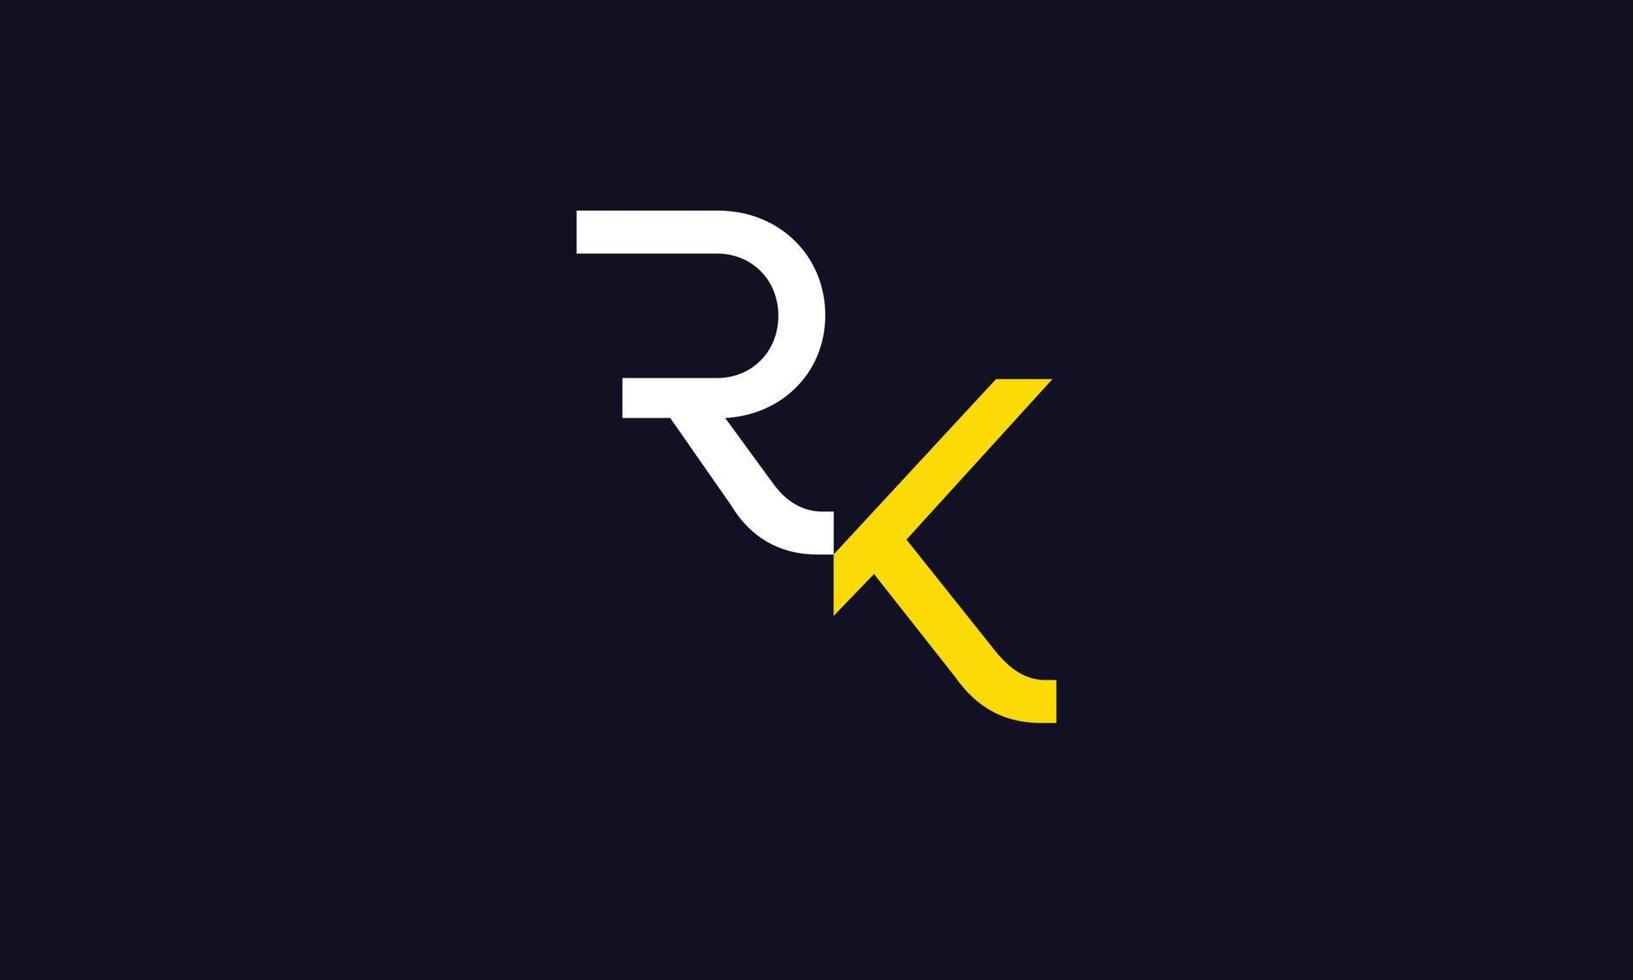 alfabeto letras iniciales monograma logo rk, kr, r y k vector